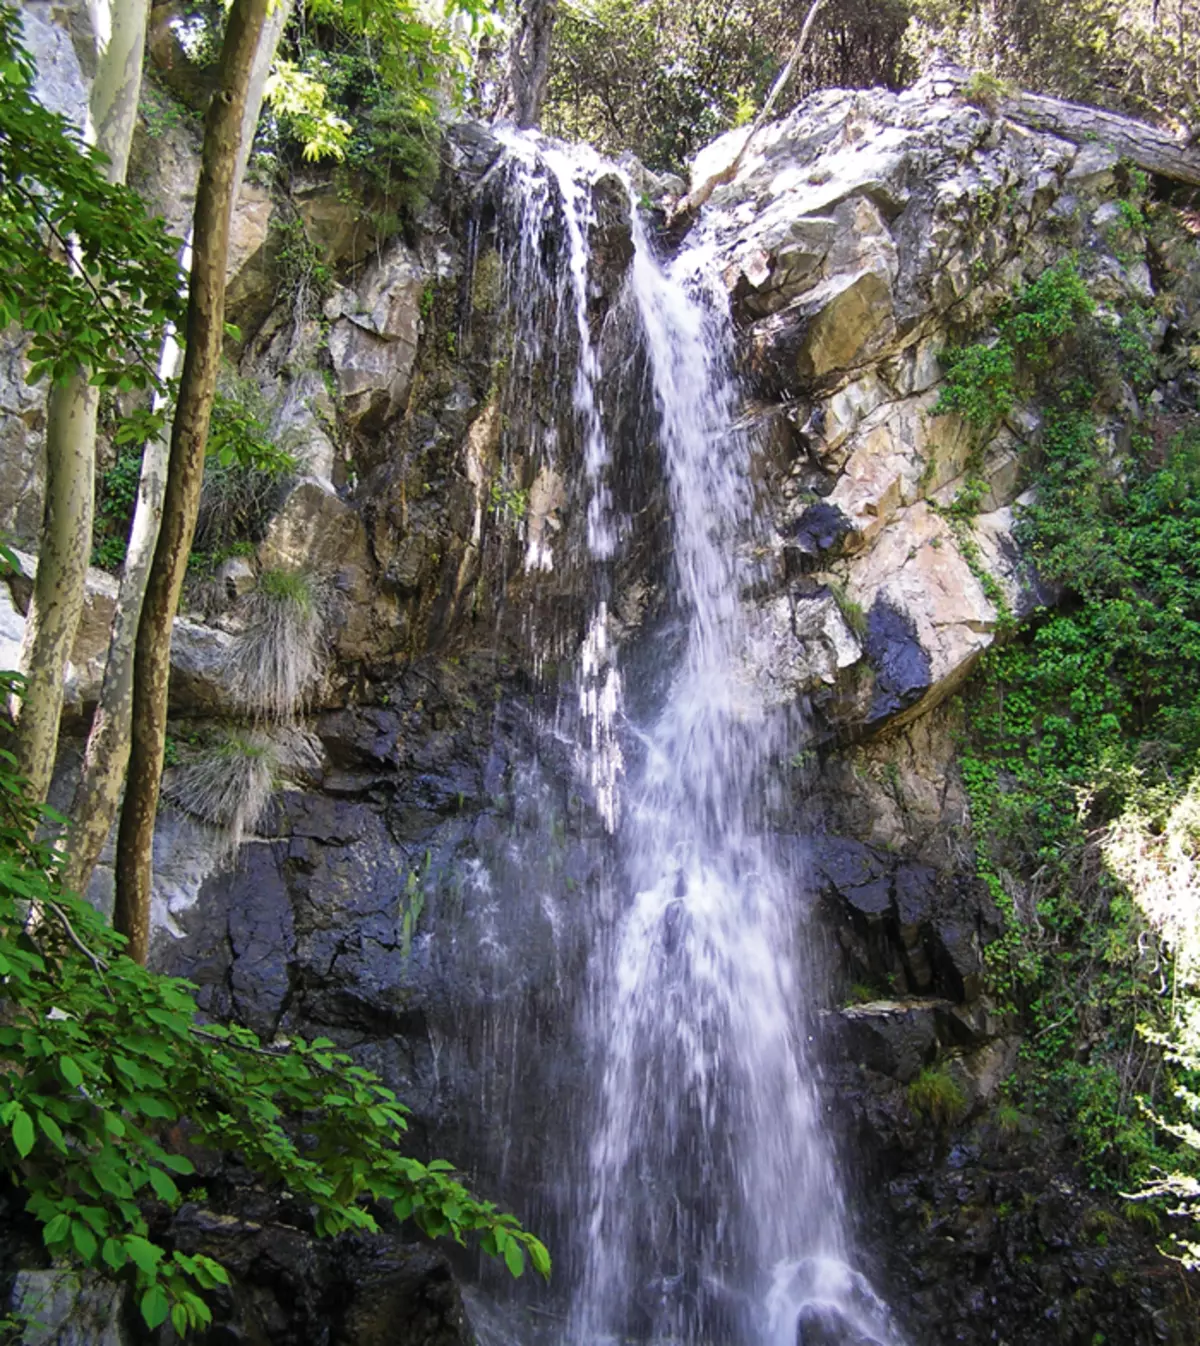 Falls caaledonia - daya daga cikin mafi kyau a cikin Cyprus